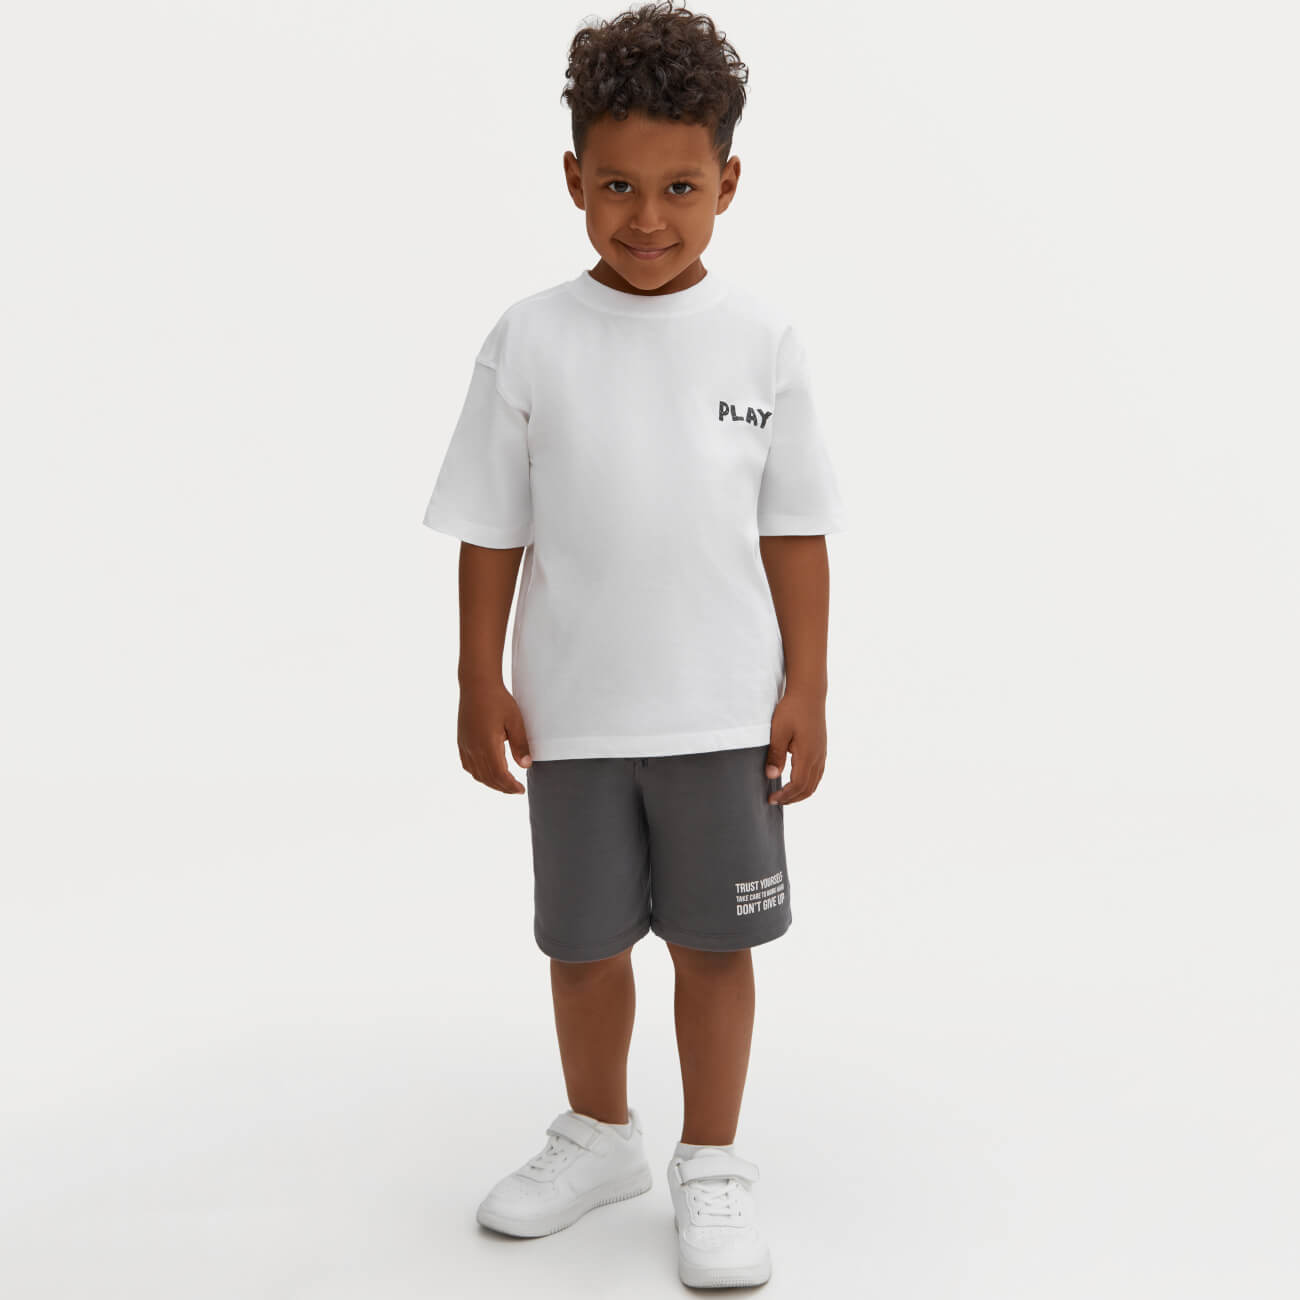 Футболка детская, р. 116 см, для мальчиков, хлопок, белая, Play, Ethan футболка женская р xl хлопок белая minimalism cassandra